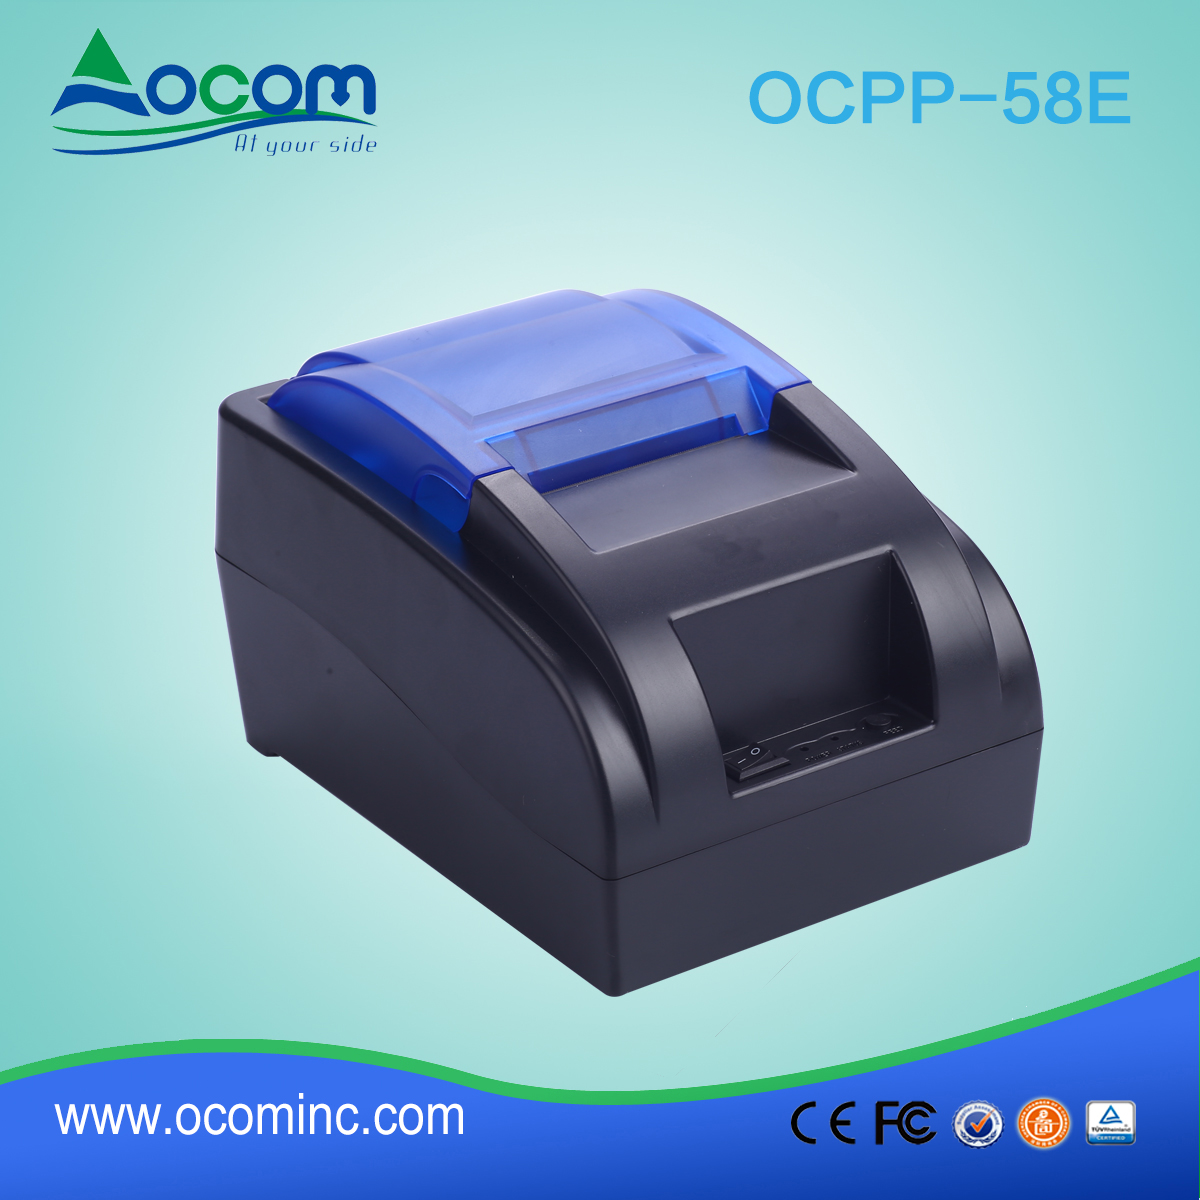 OCPP-58E-Chine a fait l'imprimante de position de 58mm de coût bas avec l'option de Bluetooth ou de WIFI